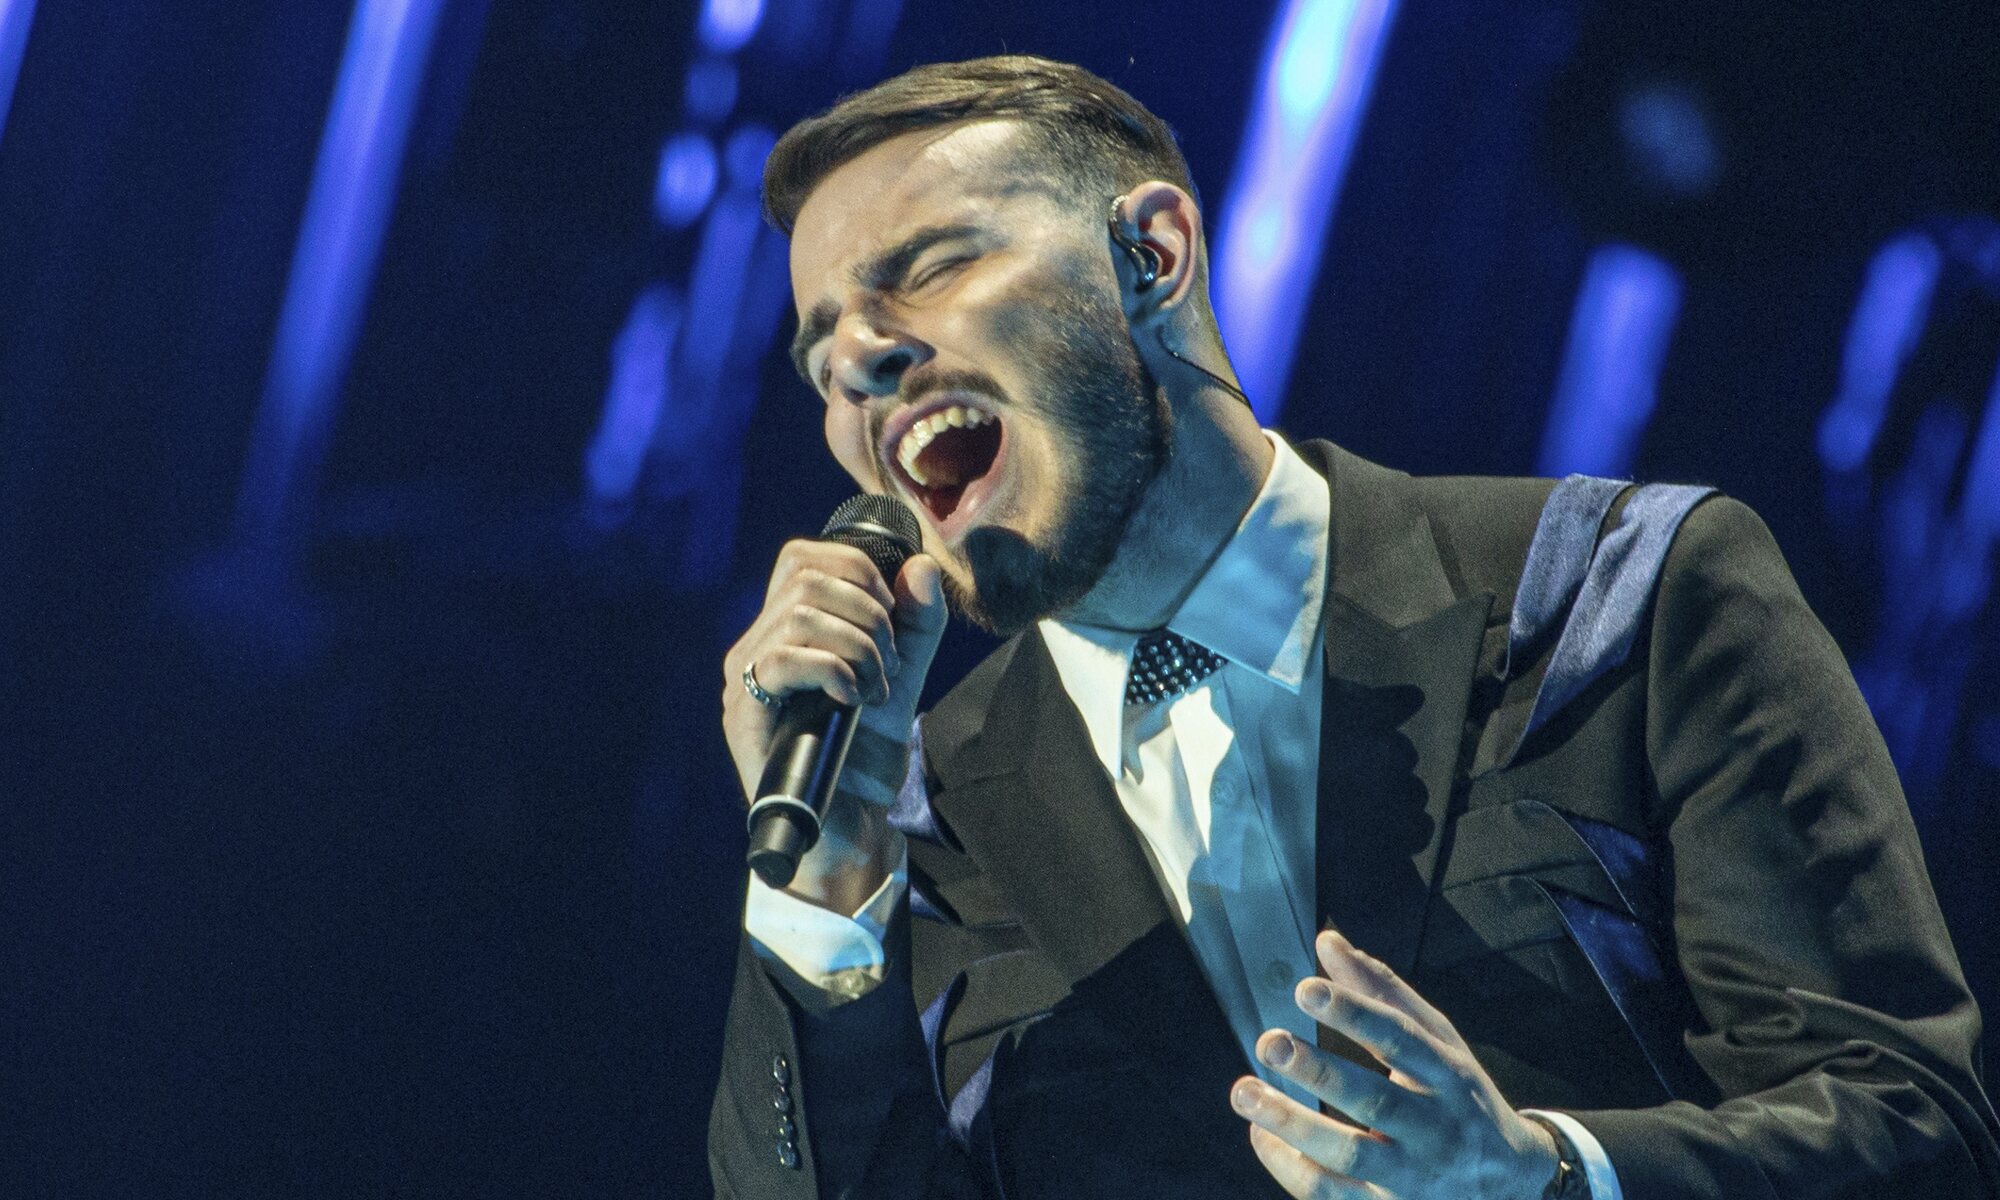 Krystian, representante de Polonia, en su segundo ensayo de Eurovisión 2022